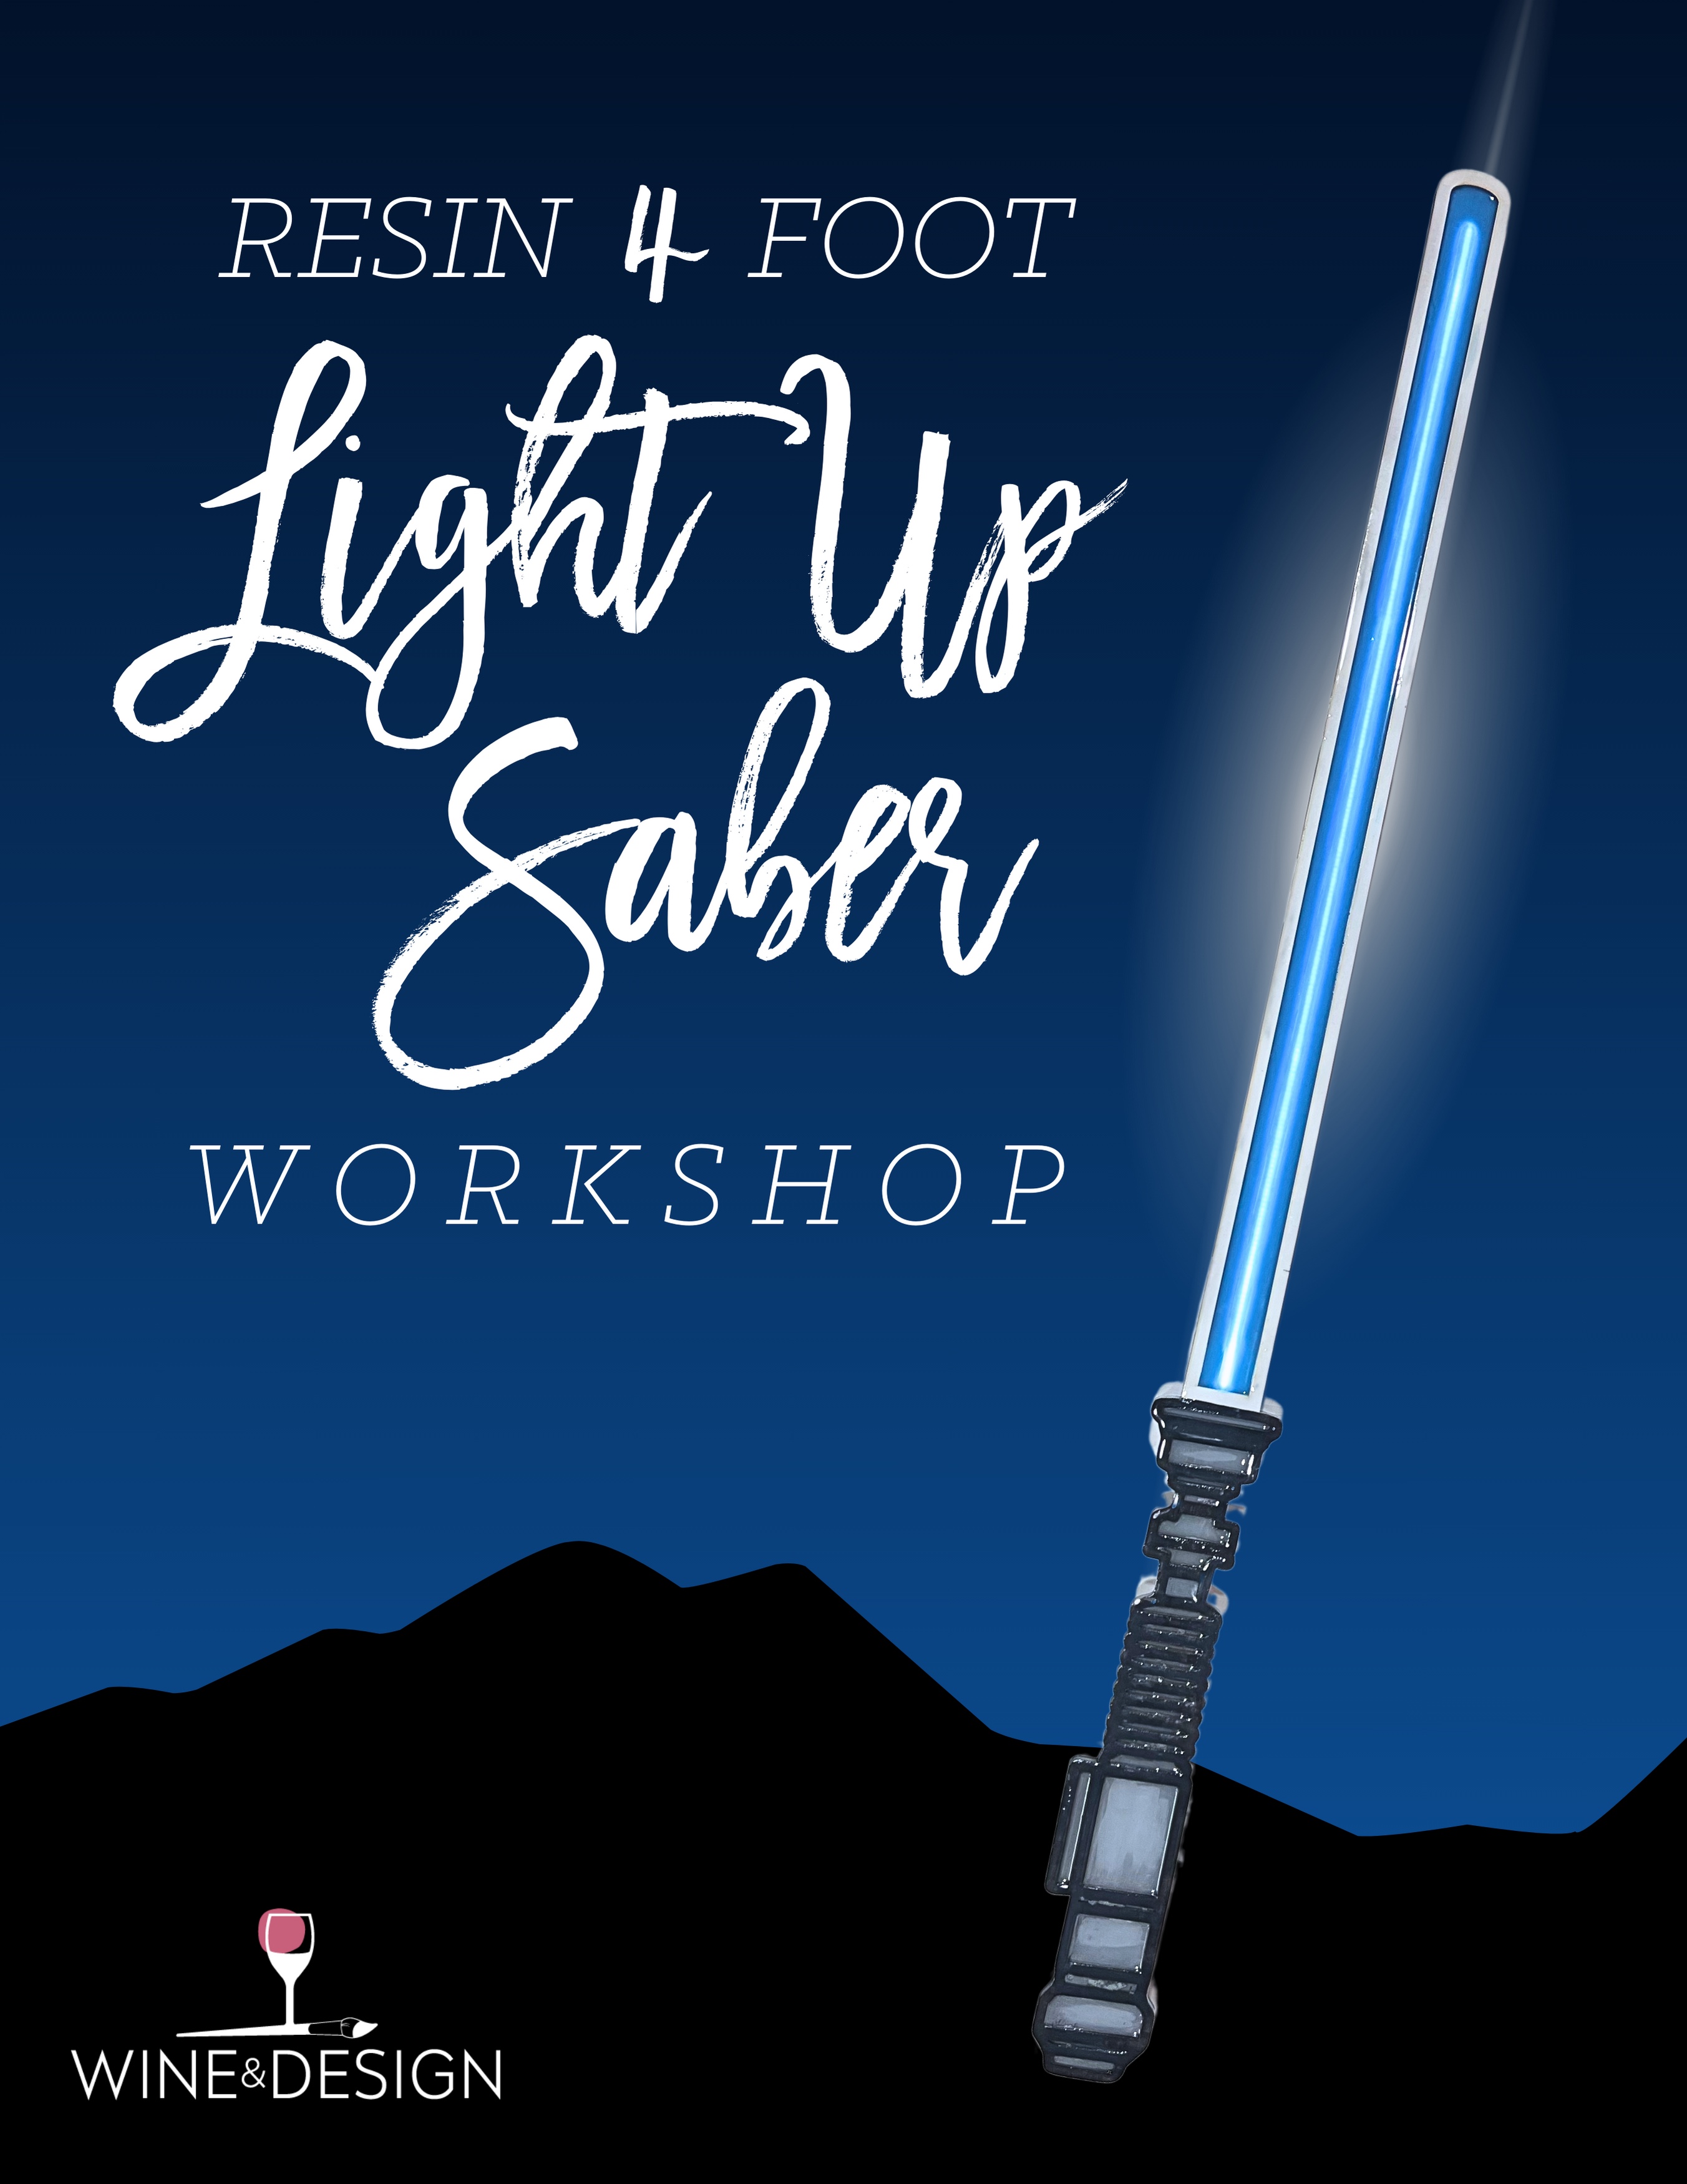 Resin 4 Foot Light Up Saber Workshop! Star Wars Trivia